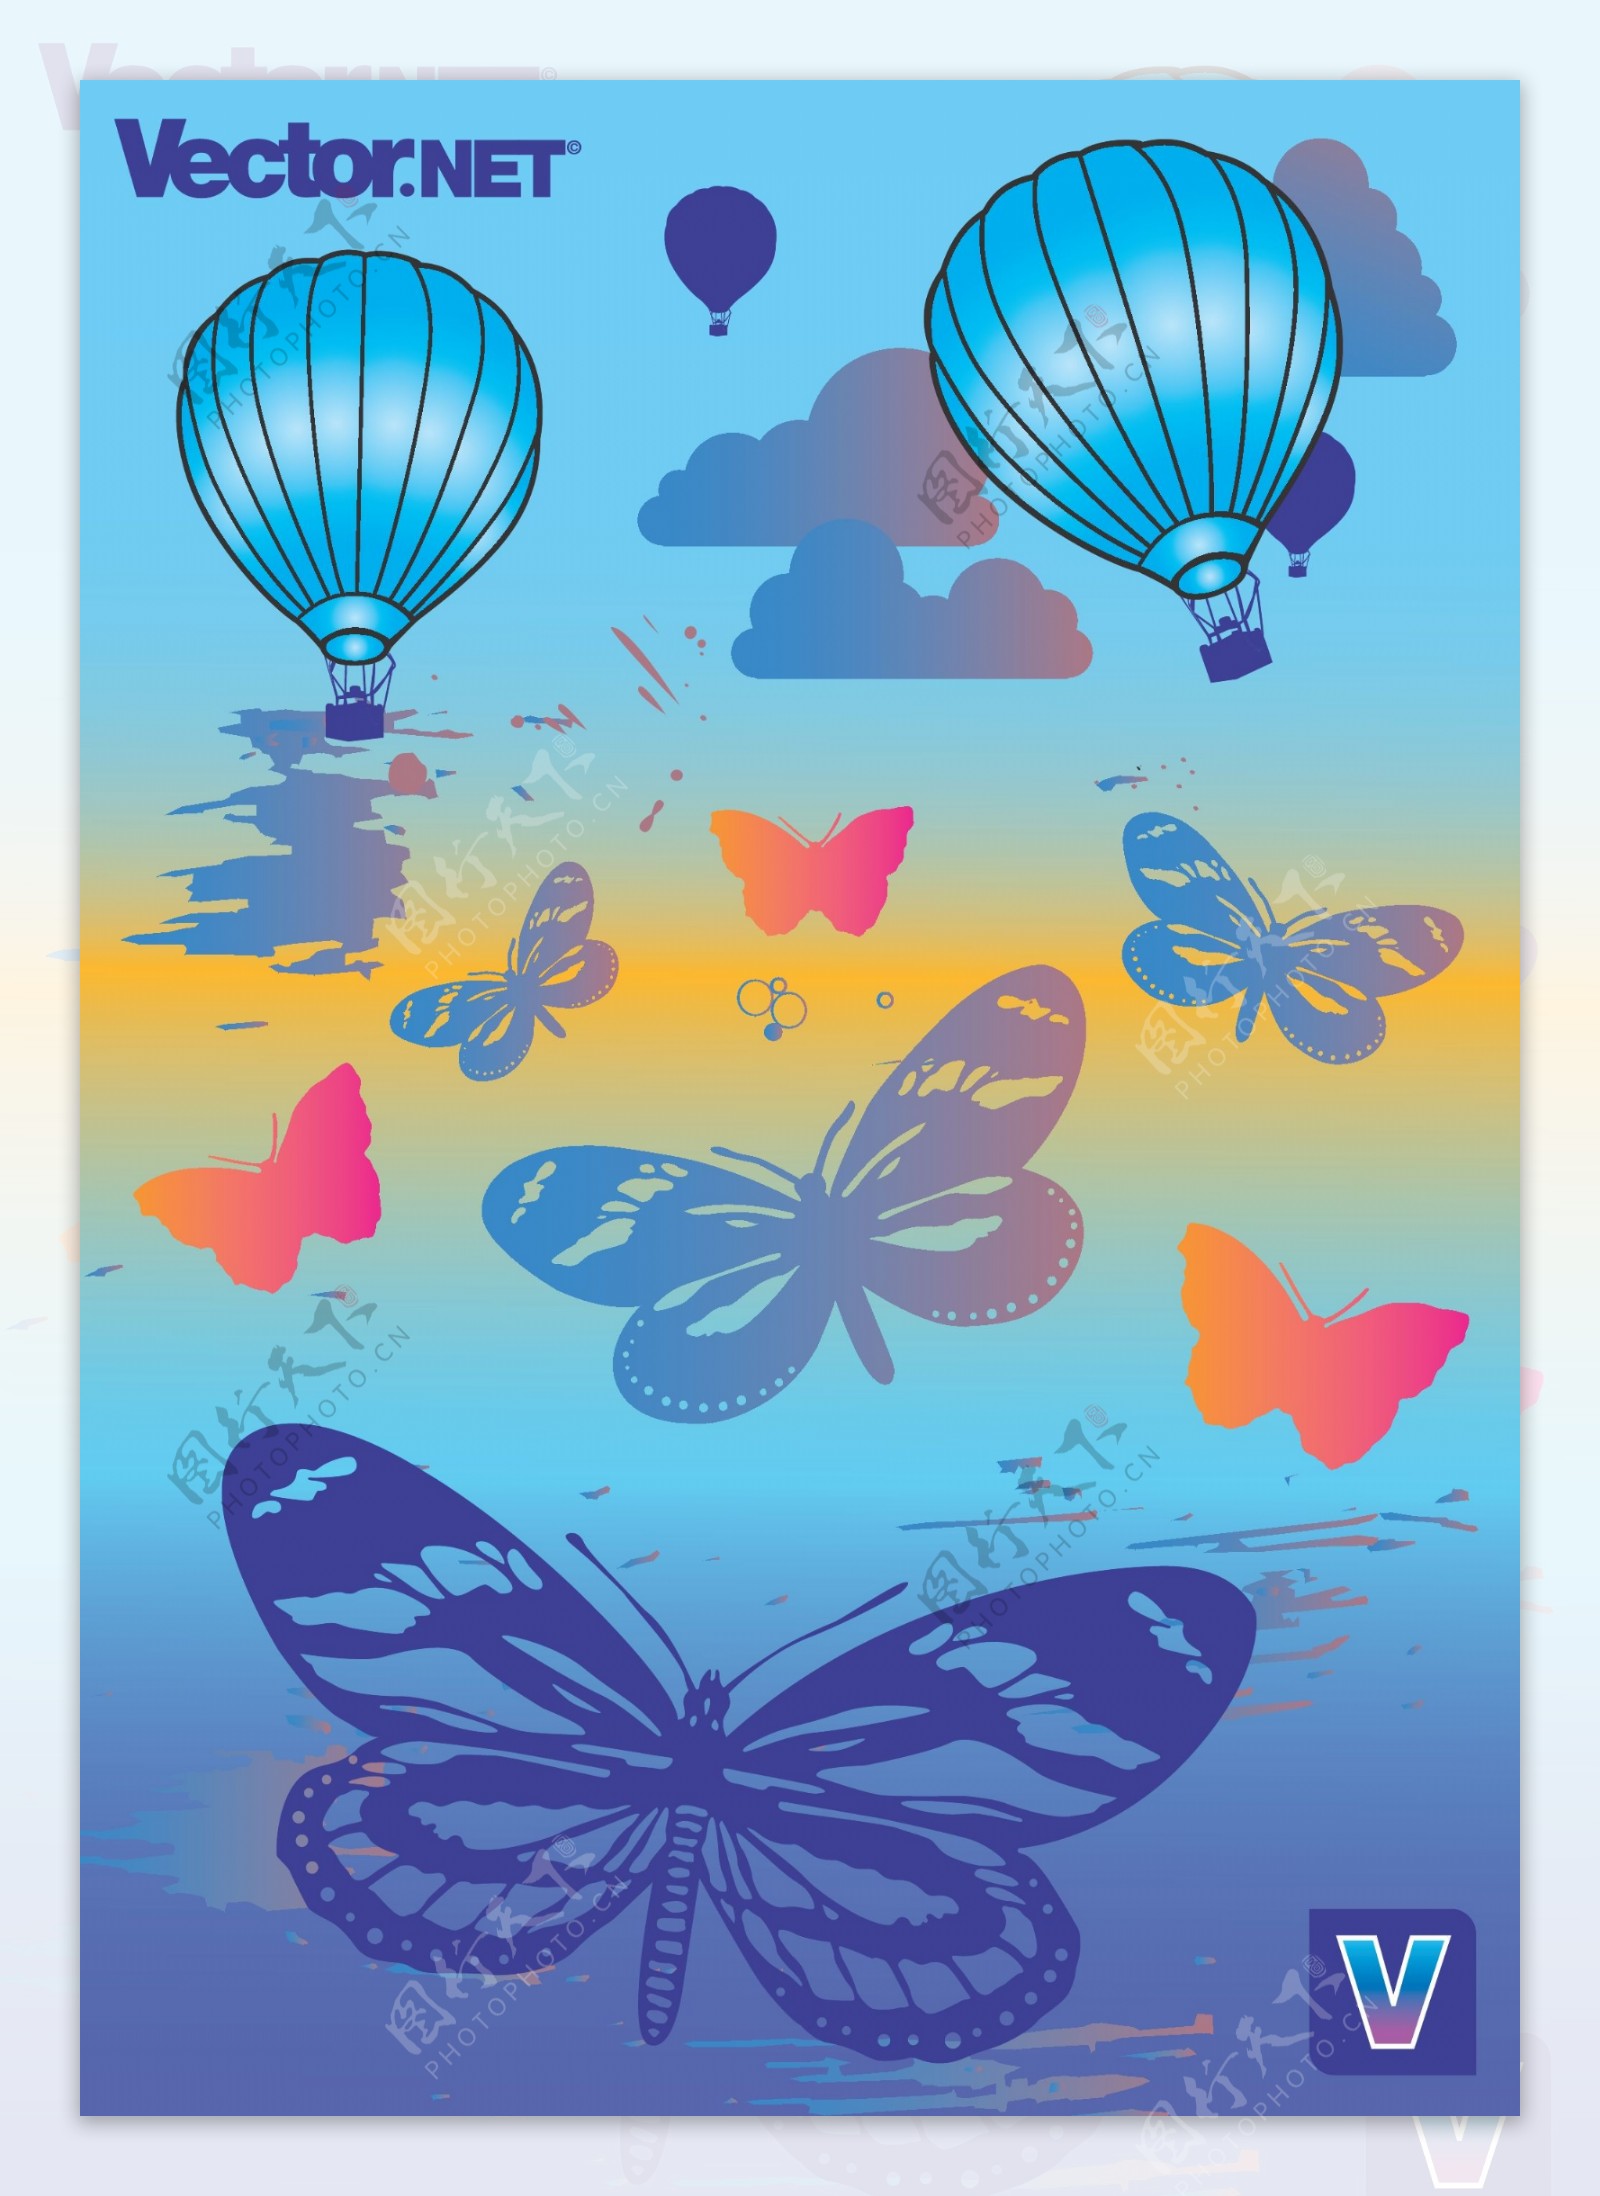 热气球和蝴蝶